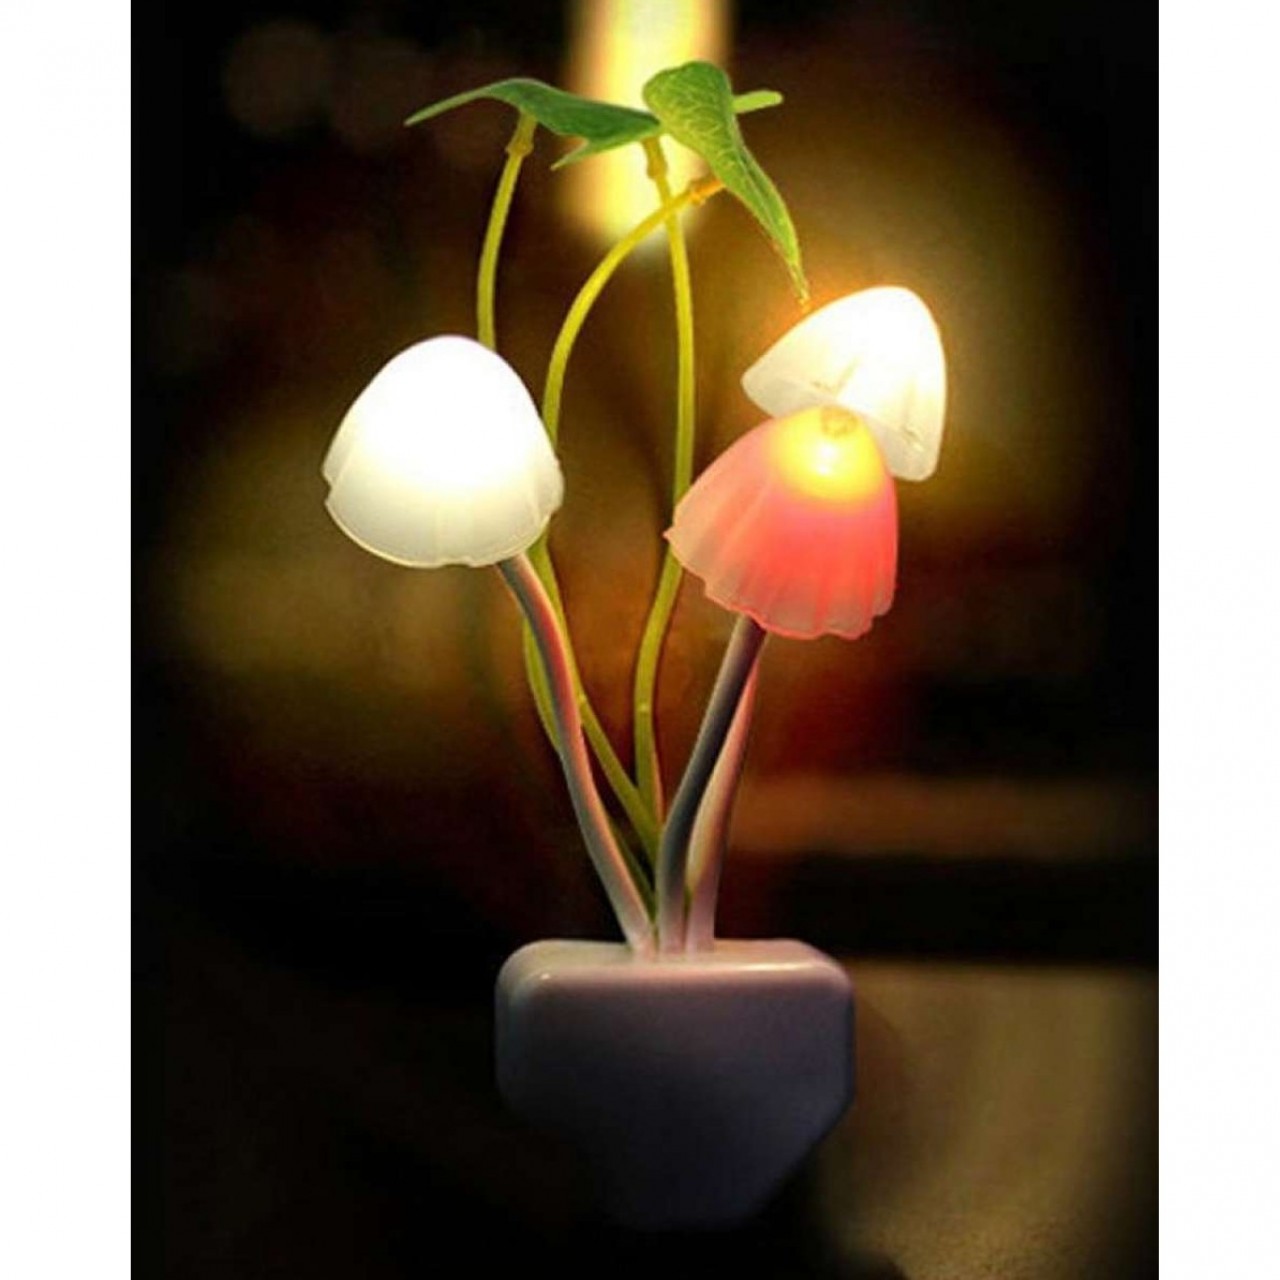 Night Lamp - Mushroom - Automatic